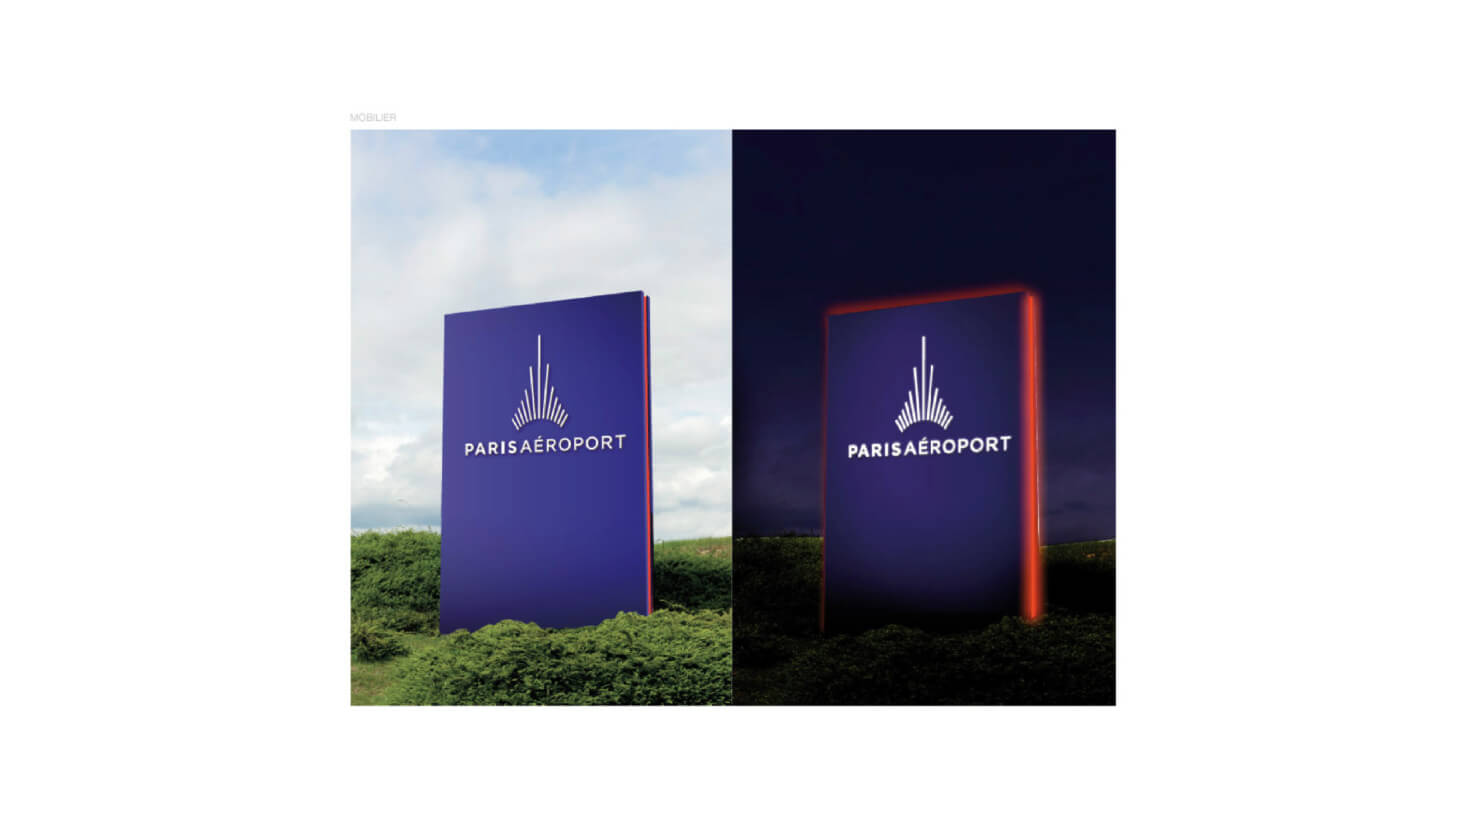 image branding ParisAéroport